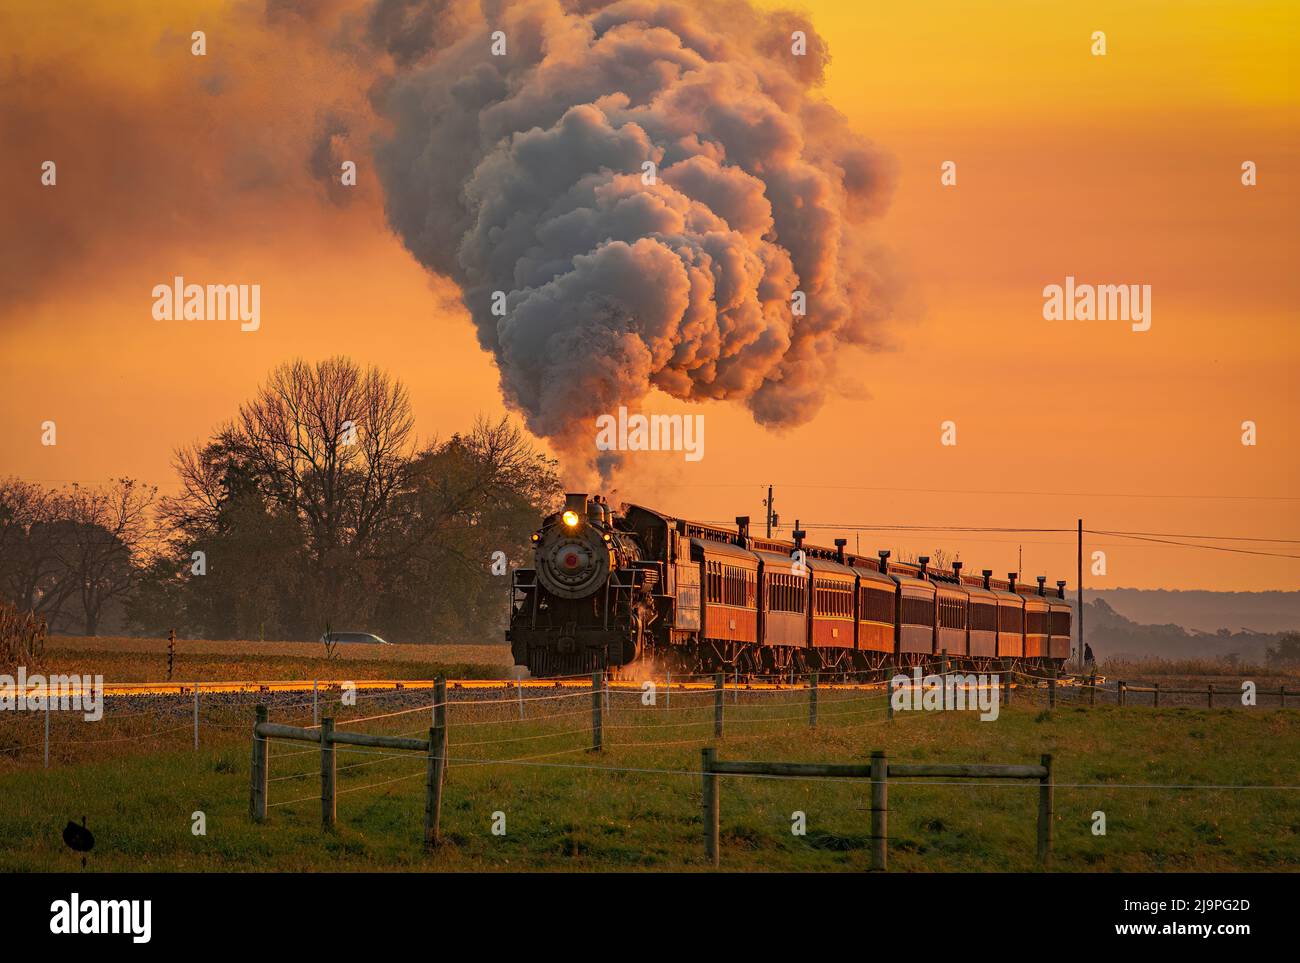 Vue sur un train de passagers à vapeur antique qui s'approche à Sunrise avec une tête de vapeur et de fumée qui se déplace à travers les terres agricoles Banque D'Images